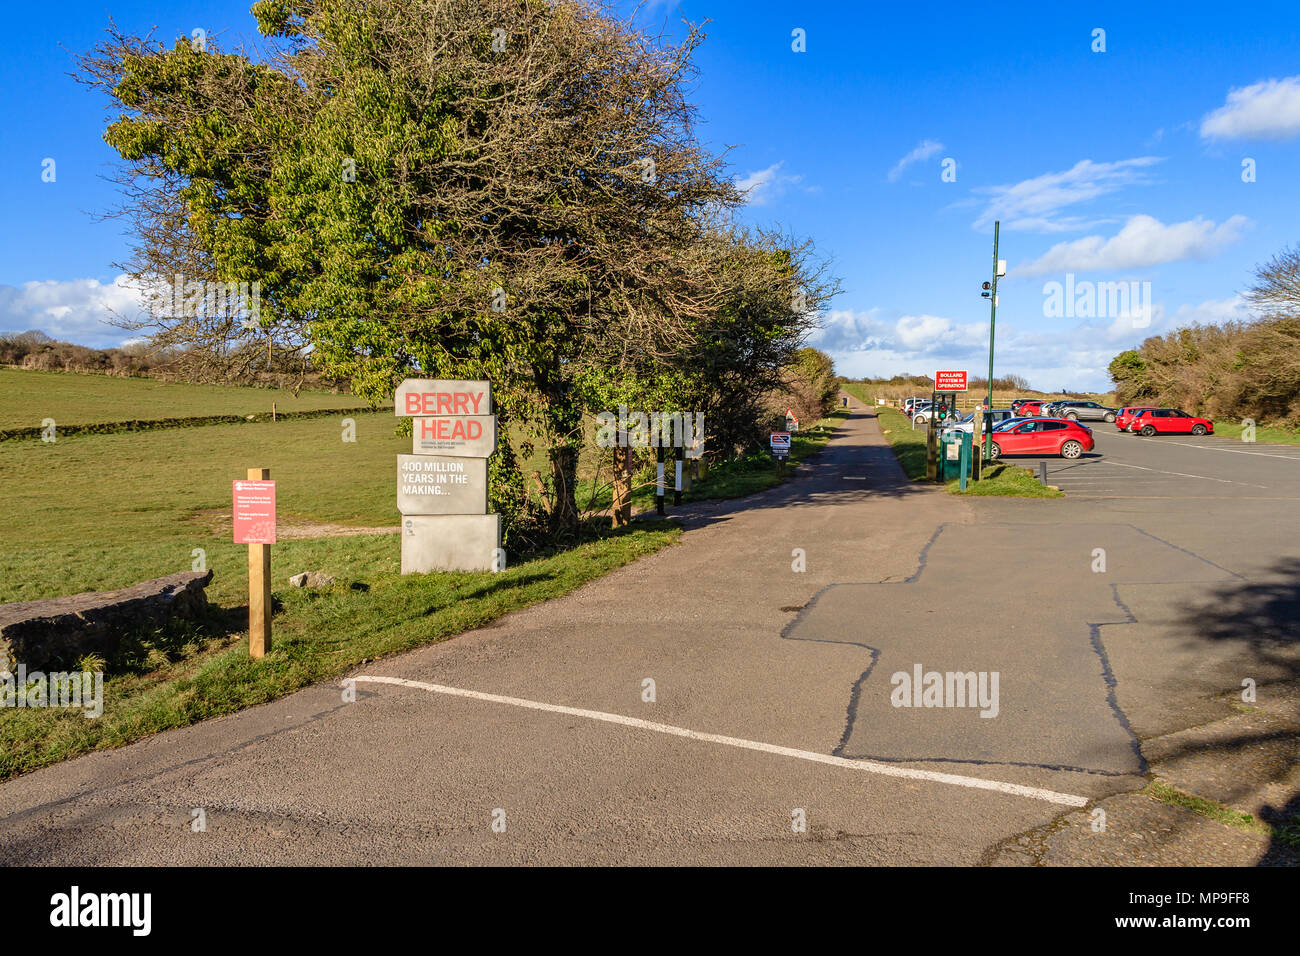 Ingresso al parco auto Per Berry Head riserva naturale vicino a Brixham, Devon. Marzo 2018. Foto Stock